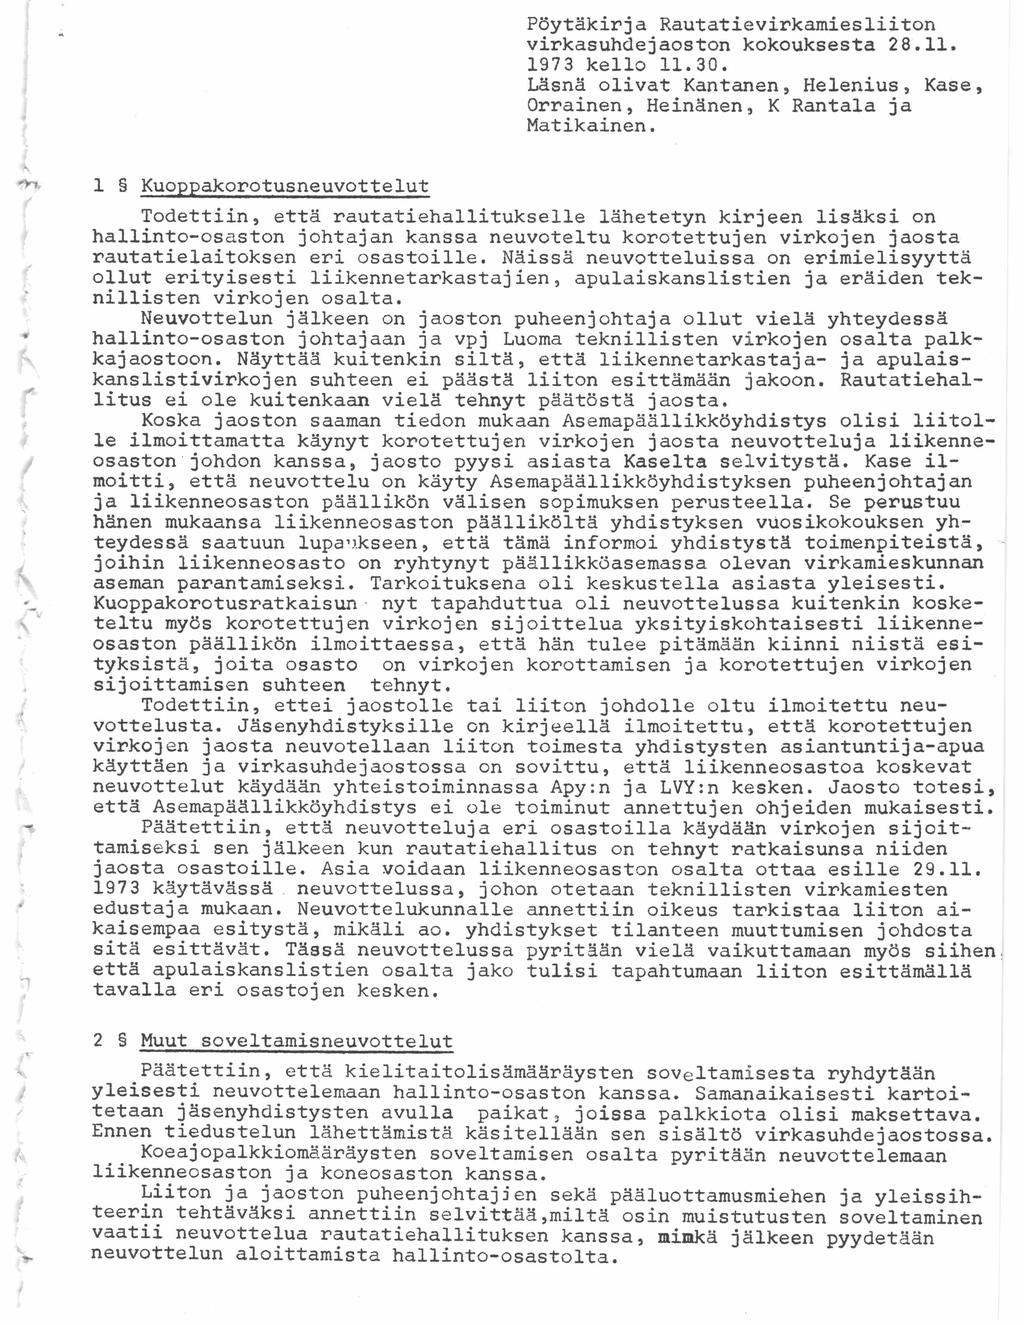 Pöytäkirja Rautatievirkamiesliiton virkasuhdejaoston kokouksesta 28.11. 1973 kello 11.30. Läsnä olivat Kantanen, Helenius, Kase, Orrainen, Heinänen, K Rantala ja Matikainen.